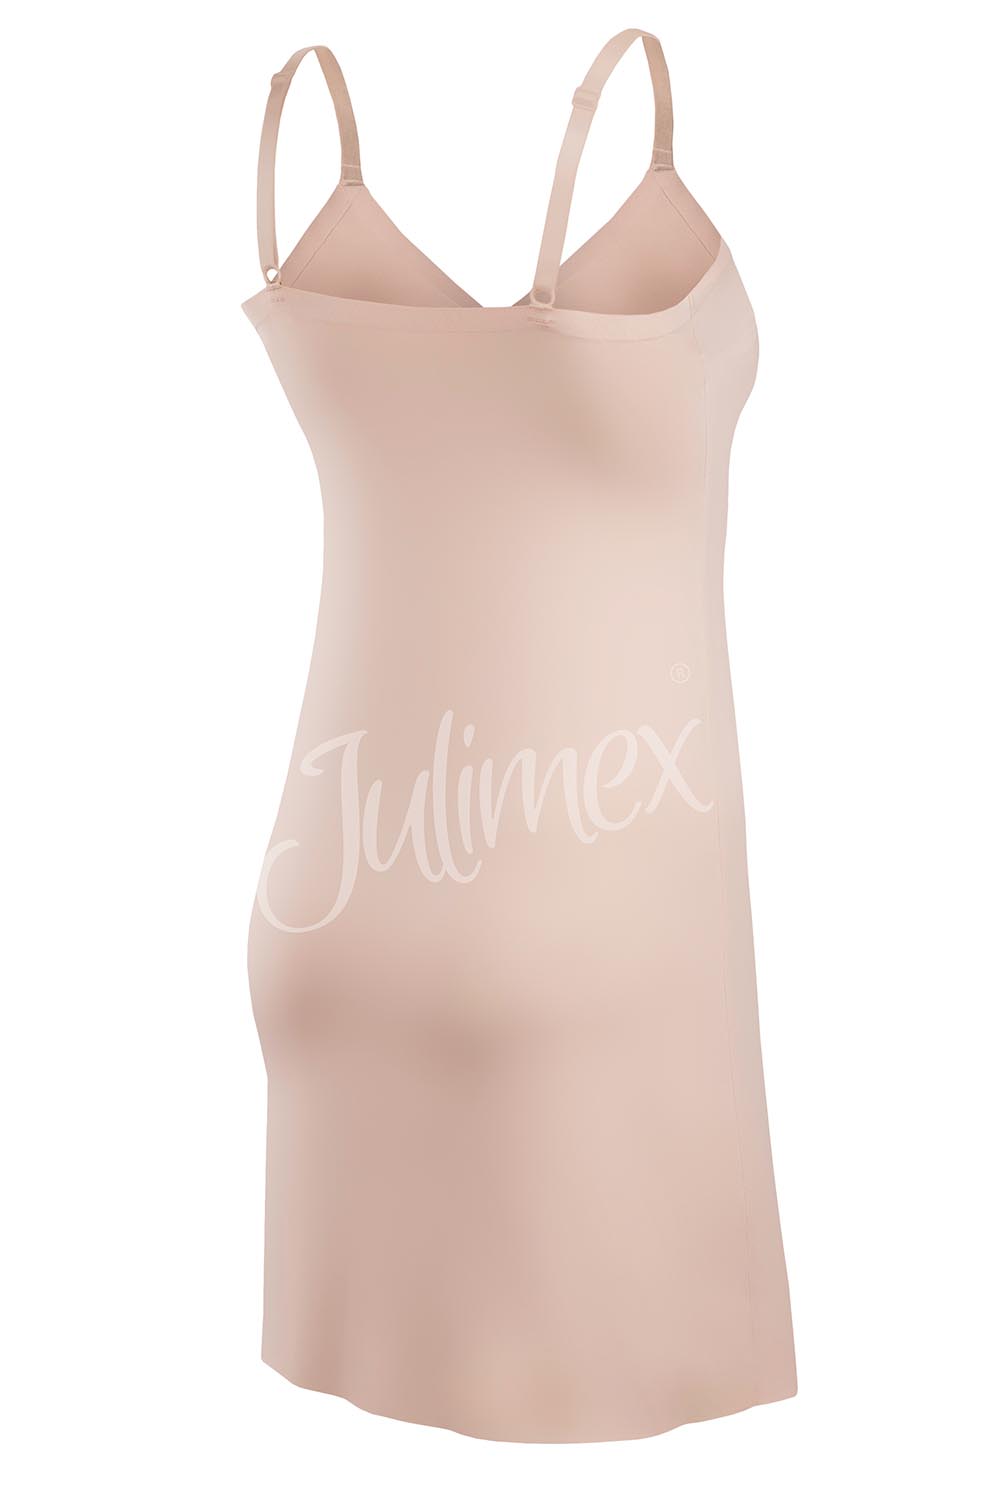 Julimex Damen Unterrock Musterlos Lingerie Soft & Smooth slip, Beige Beige  | | DUmalDU